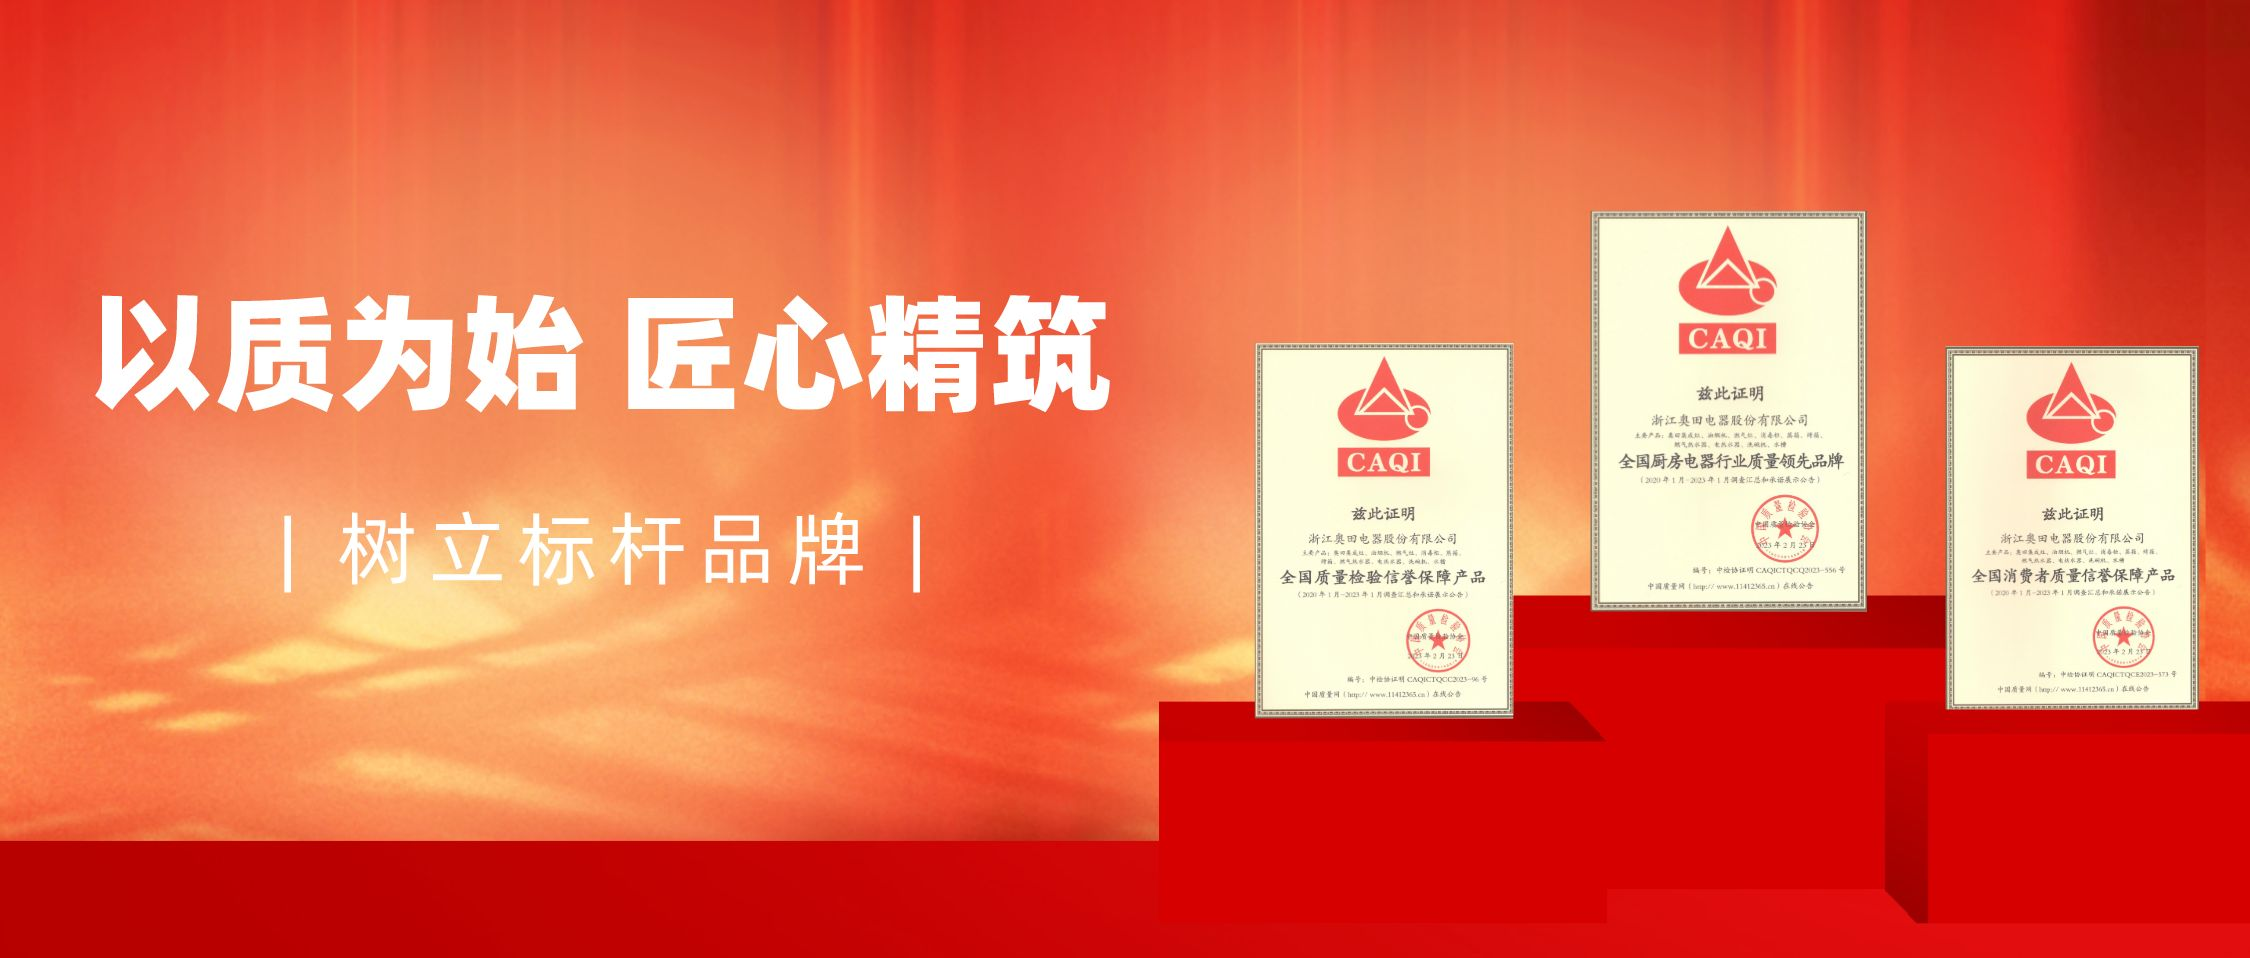 杏鑫注册荣获中国质量检验协会三项荣誉认证！